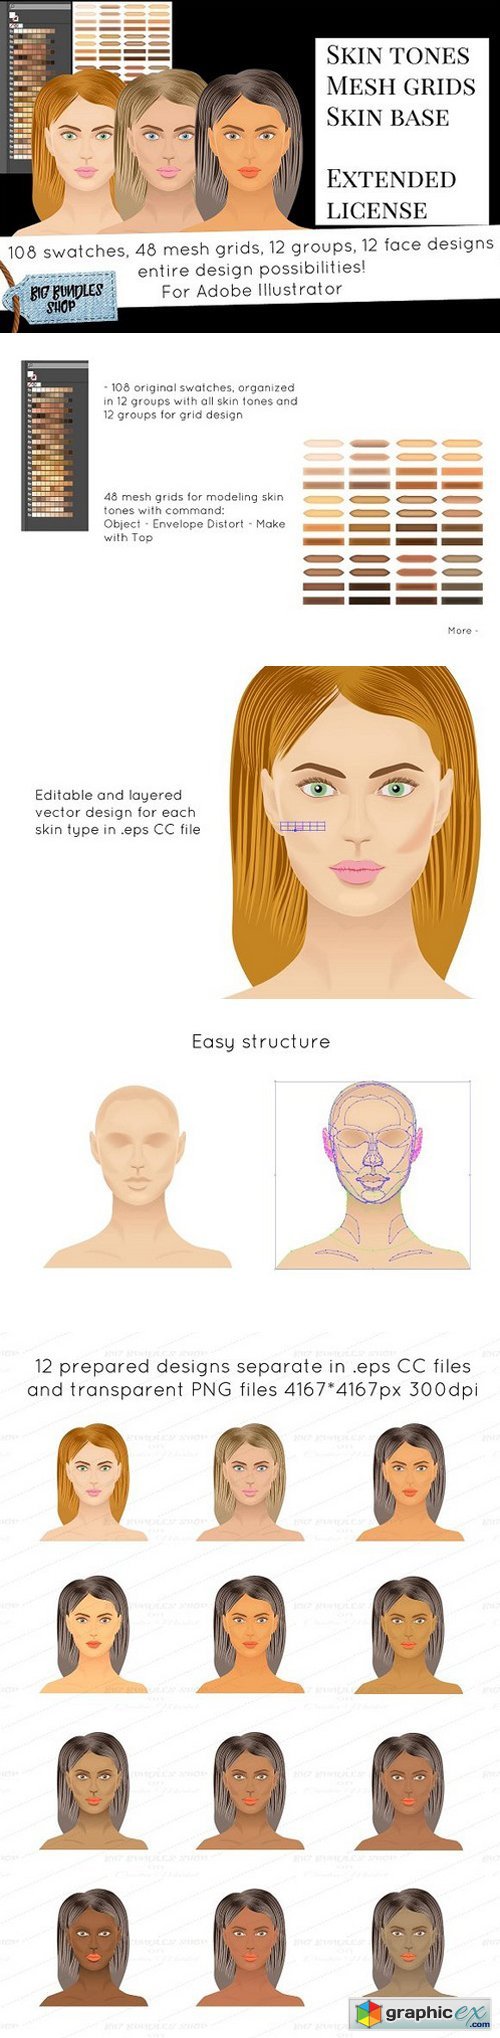 Skin tones - Adobe illustrator